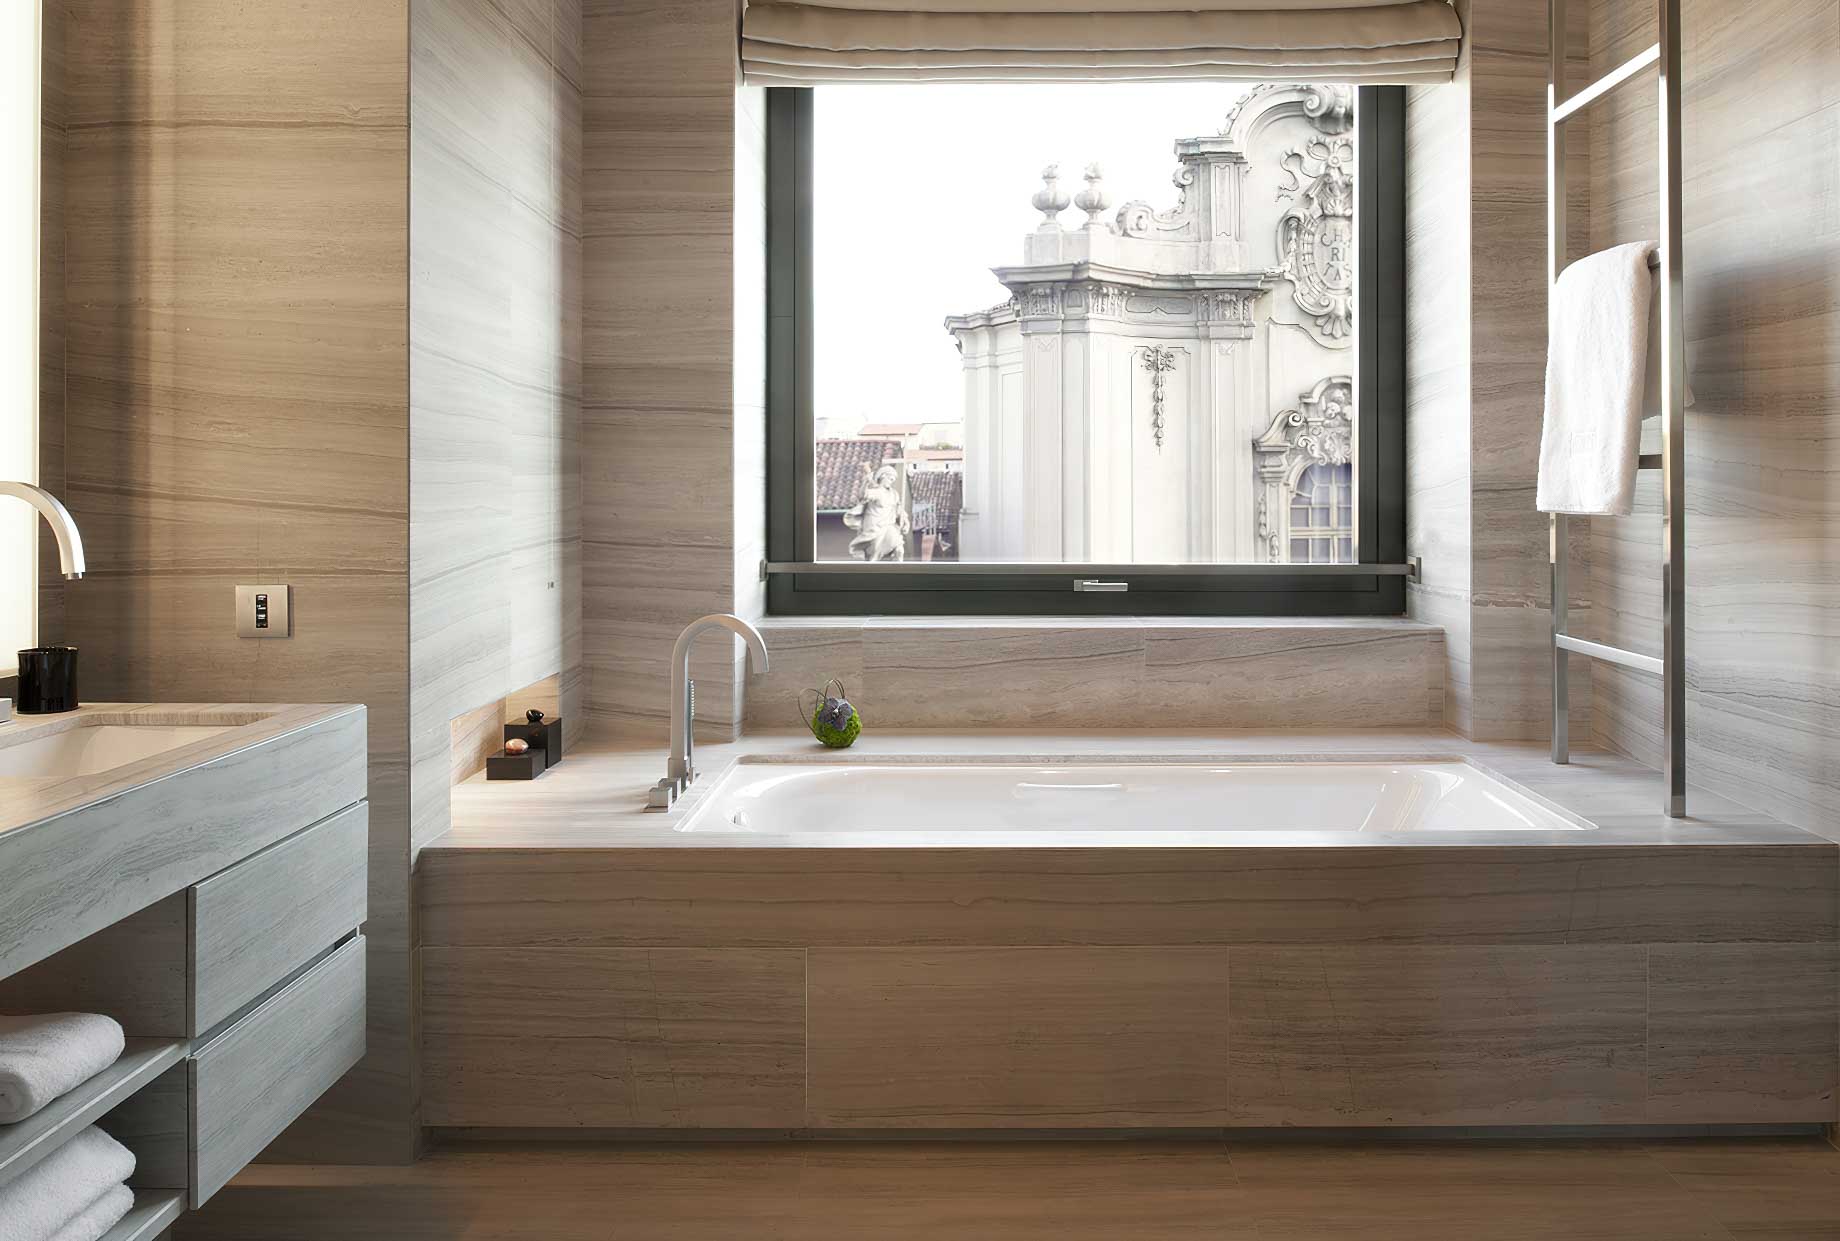 031 – Armani Hotel Milano – Milan, Italy – Armani Suite Bathroom Tub